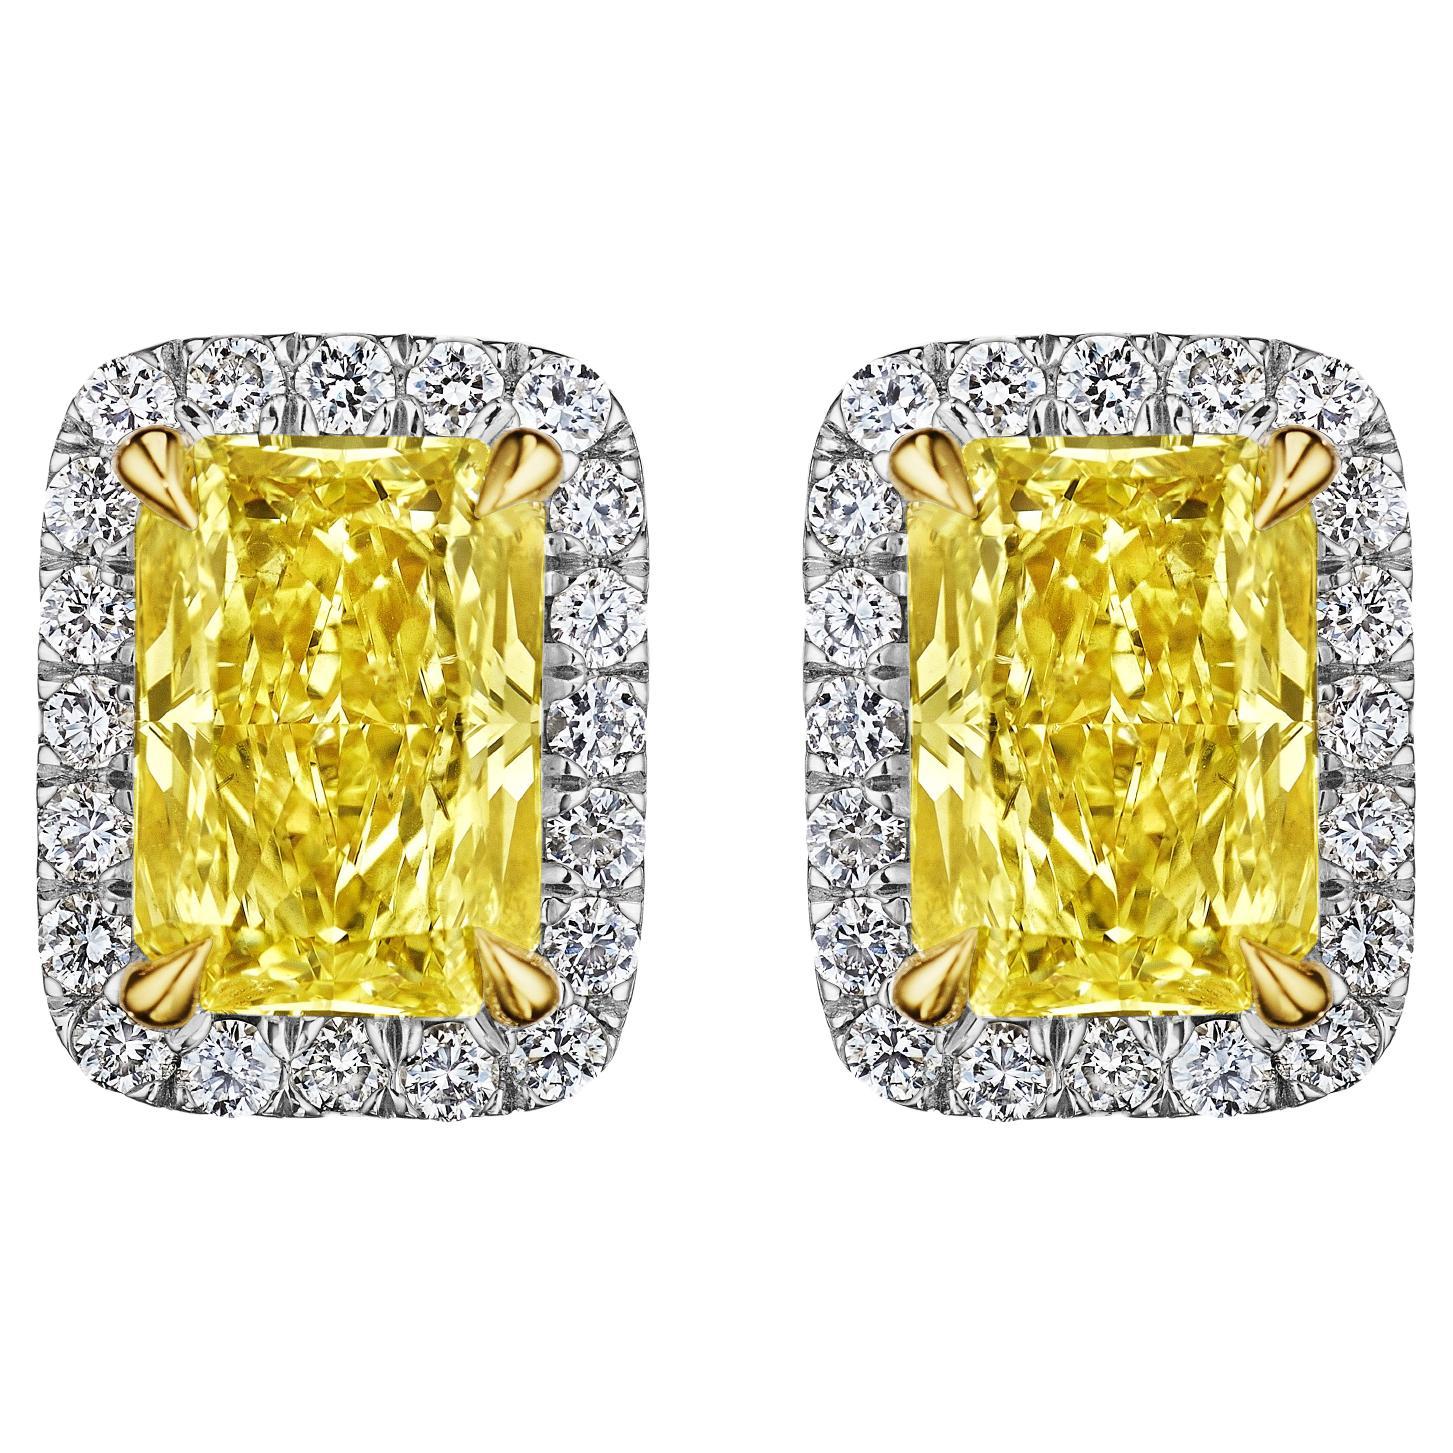 2.83ct GIA Certified Fancy Yellow Radiant Diamond Halo Earrings in 18KT Gold